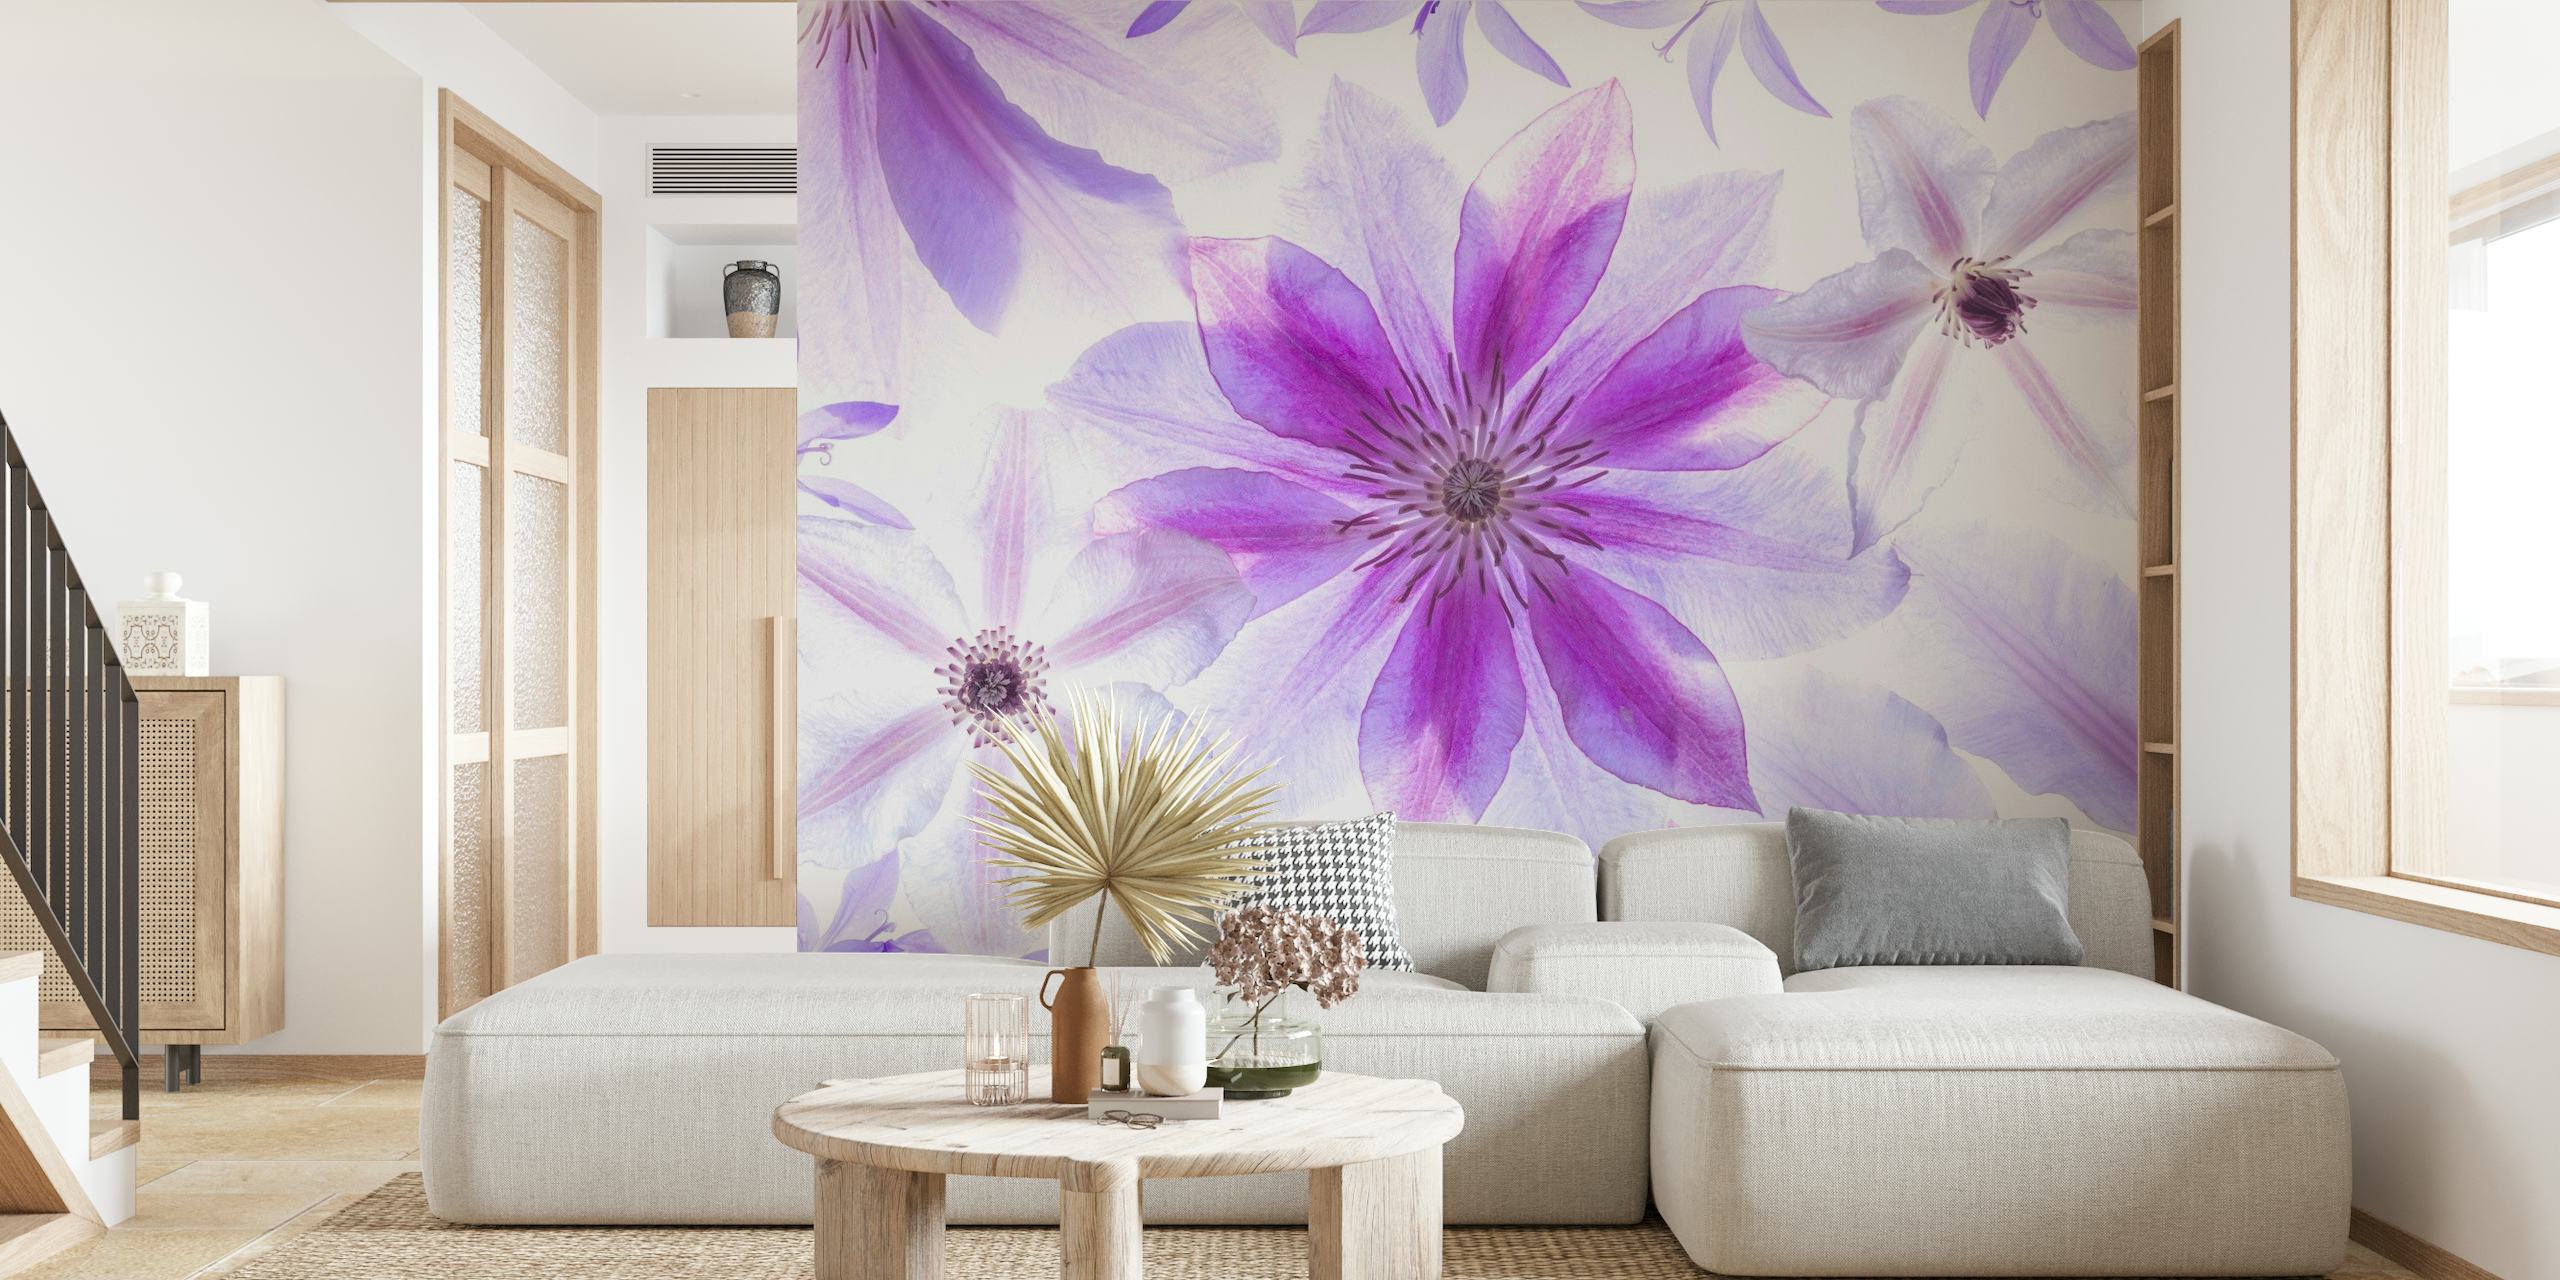 Fotomural vinílico de parede de flores clematis roxas e brancas para decoração de casa